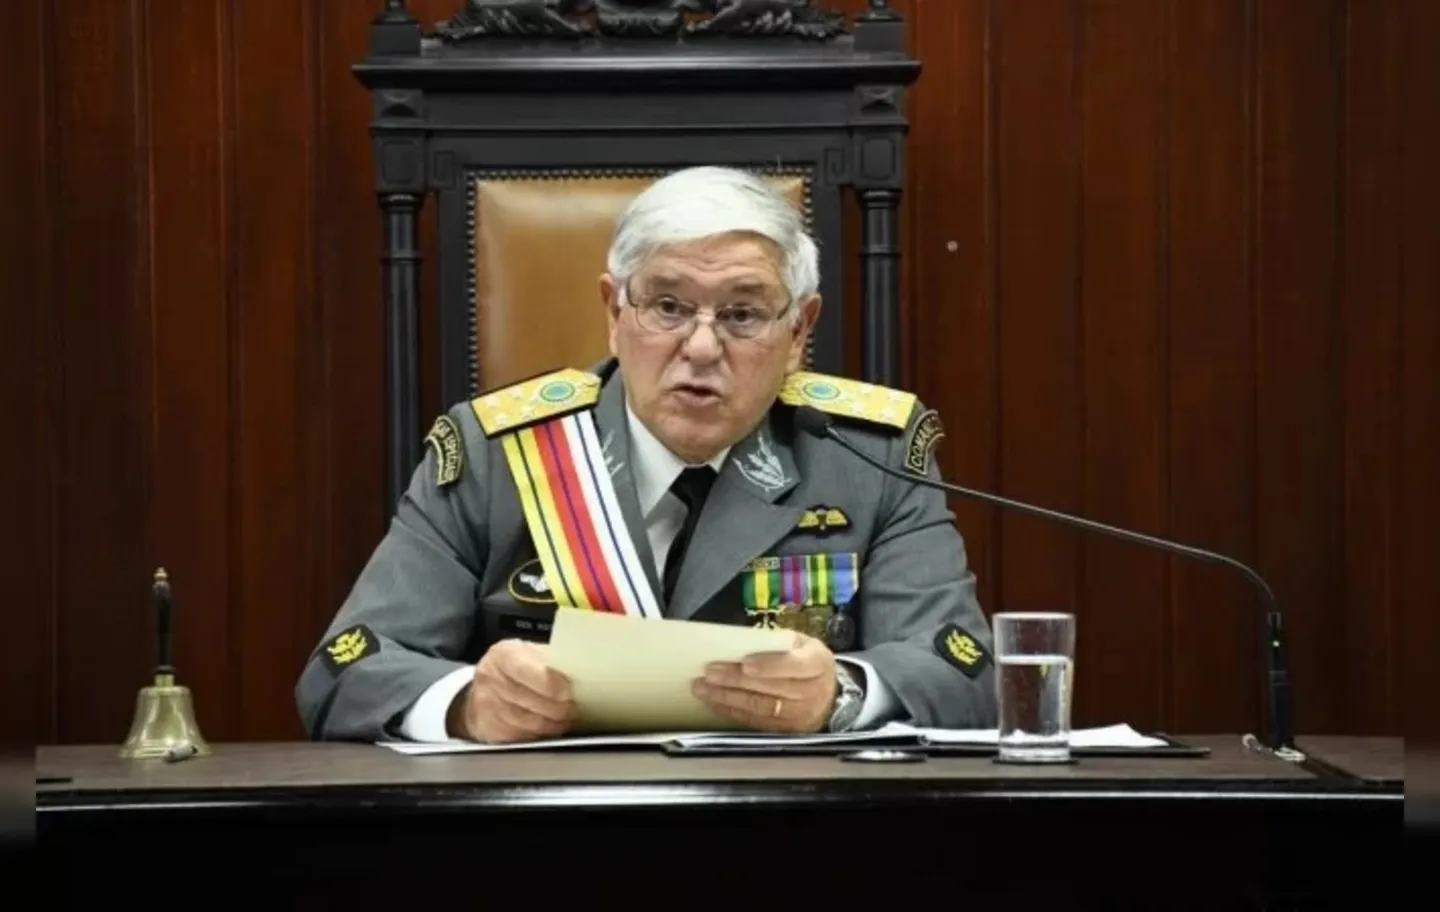 O general Luiz Carlos Gomes Mattos falou que ficou incomodado com a repercussão sobre o passado das Forças Armadas durante o período ditatorial